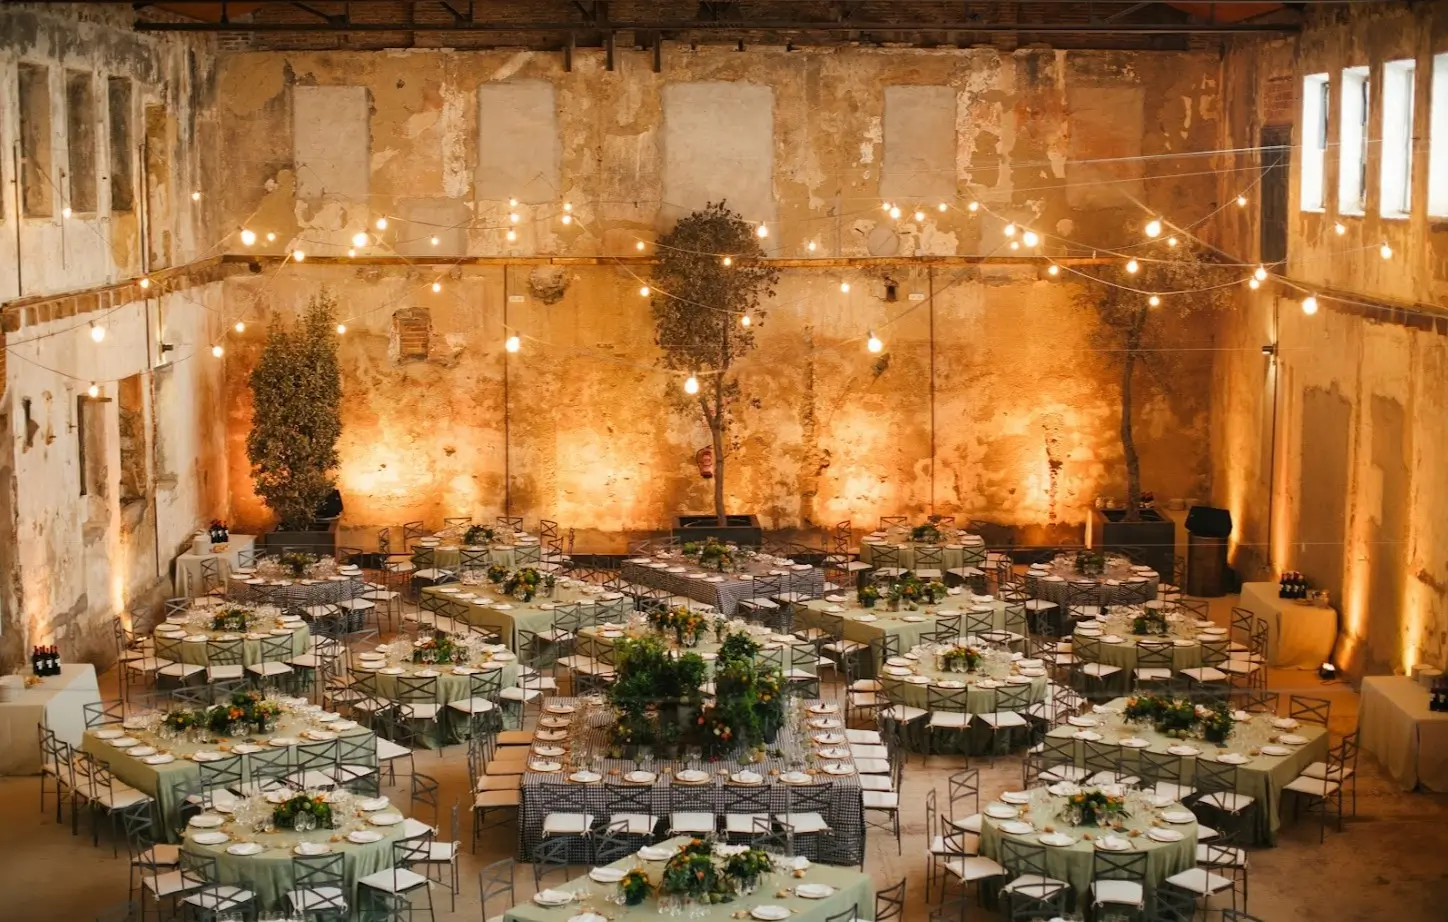  Vista general de un salón de boda muy amplio con las mesas preparadas